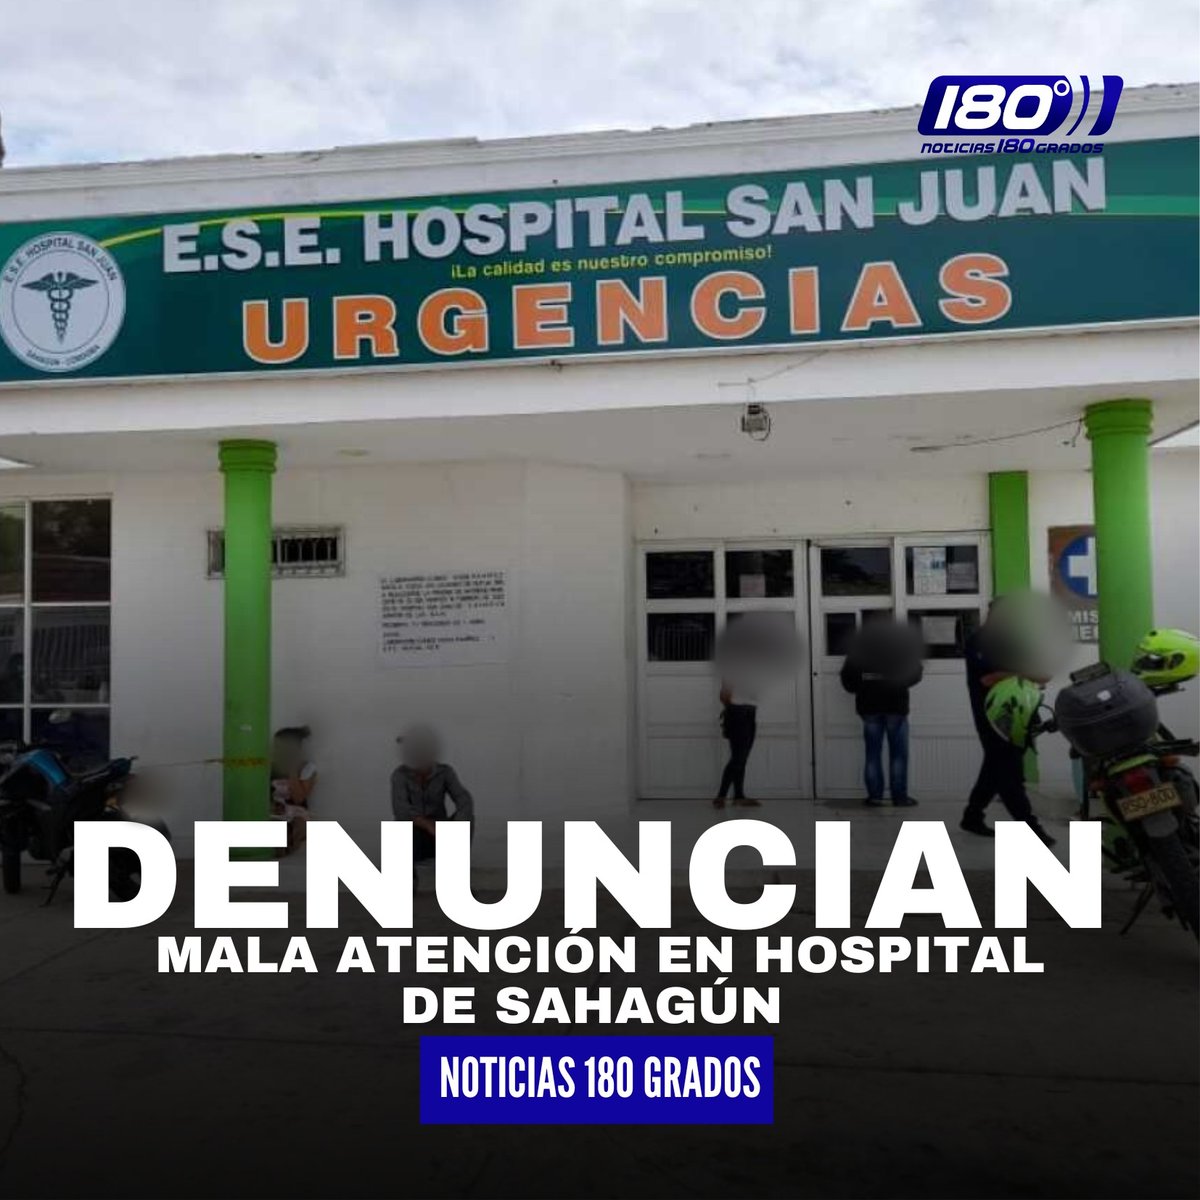 #DenunciasYQuejas - Usuarios se quejan de la mala atención en el hospital de Sahagún 

m.facebook.com/story.php?stor…